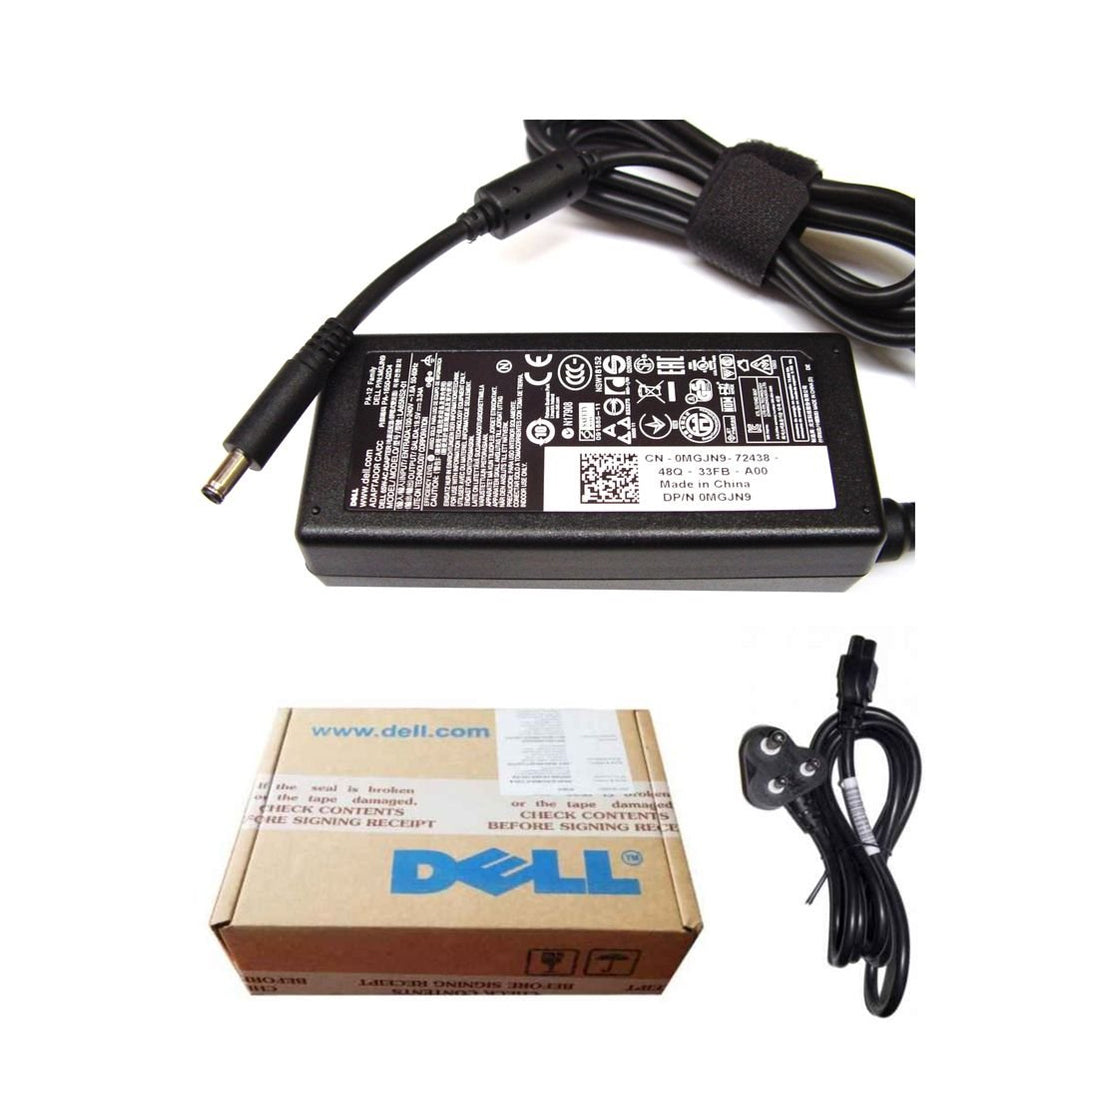 Dell ओरिजिनल 65W 19.5V 4.5mm पिन लैपटॉप चार्जर अडैप्टर Inspiron 11 3152 के लिए पावर कॉर्ड के साथ